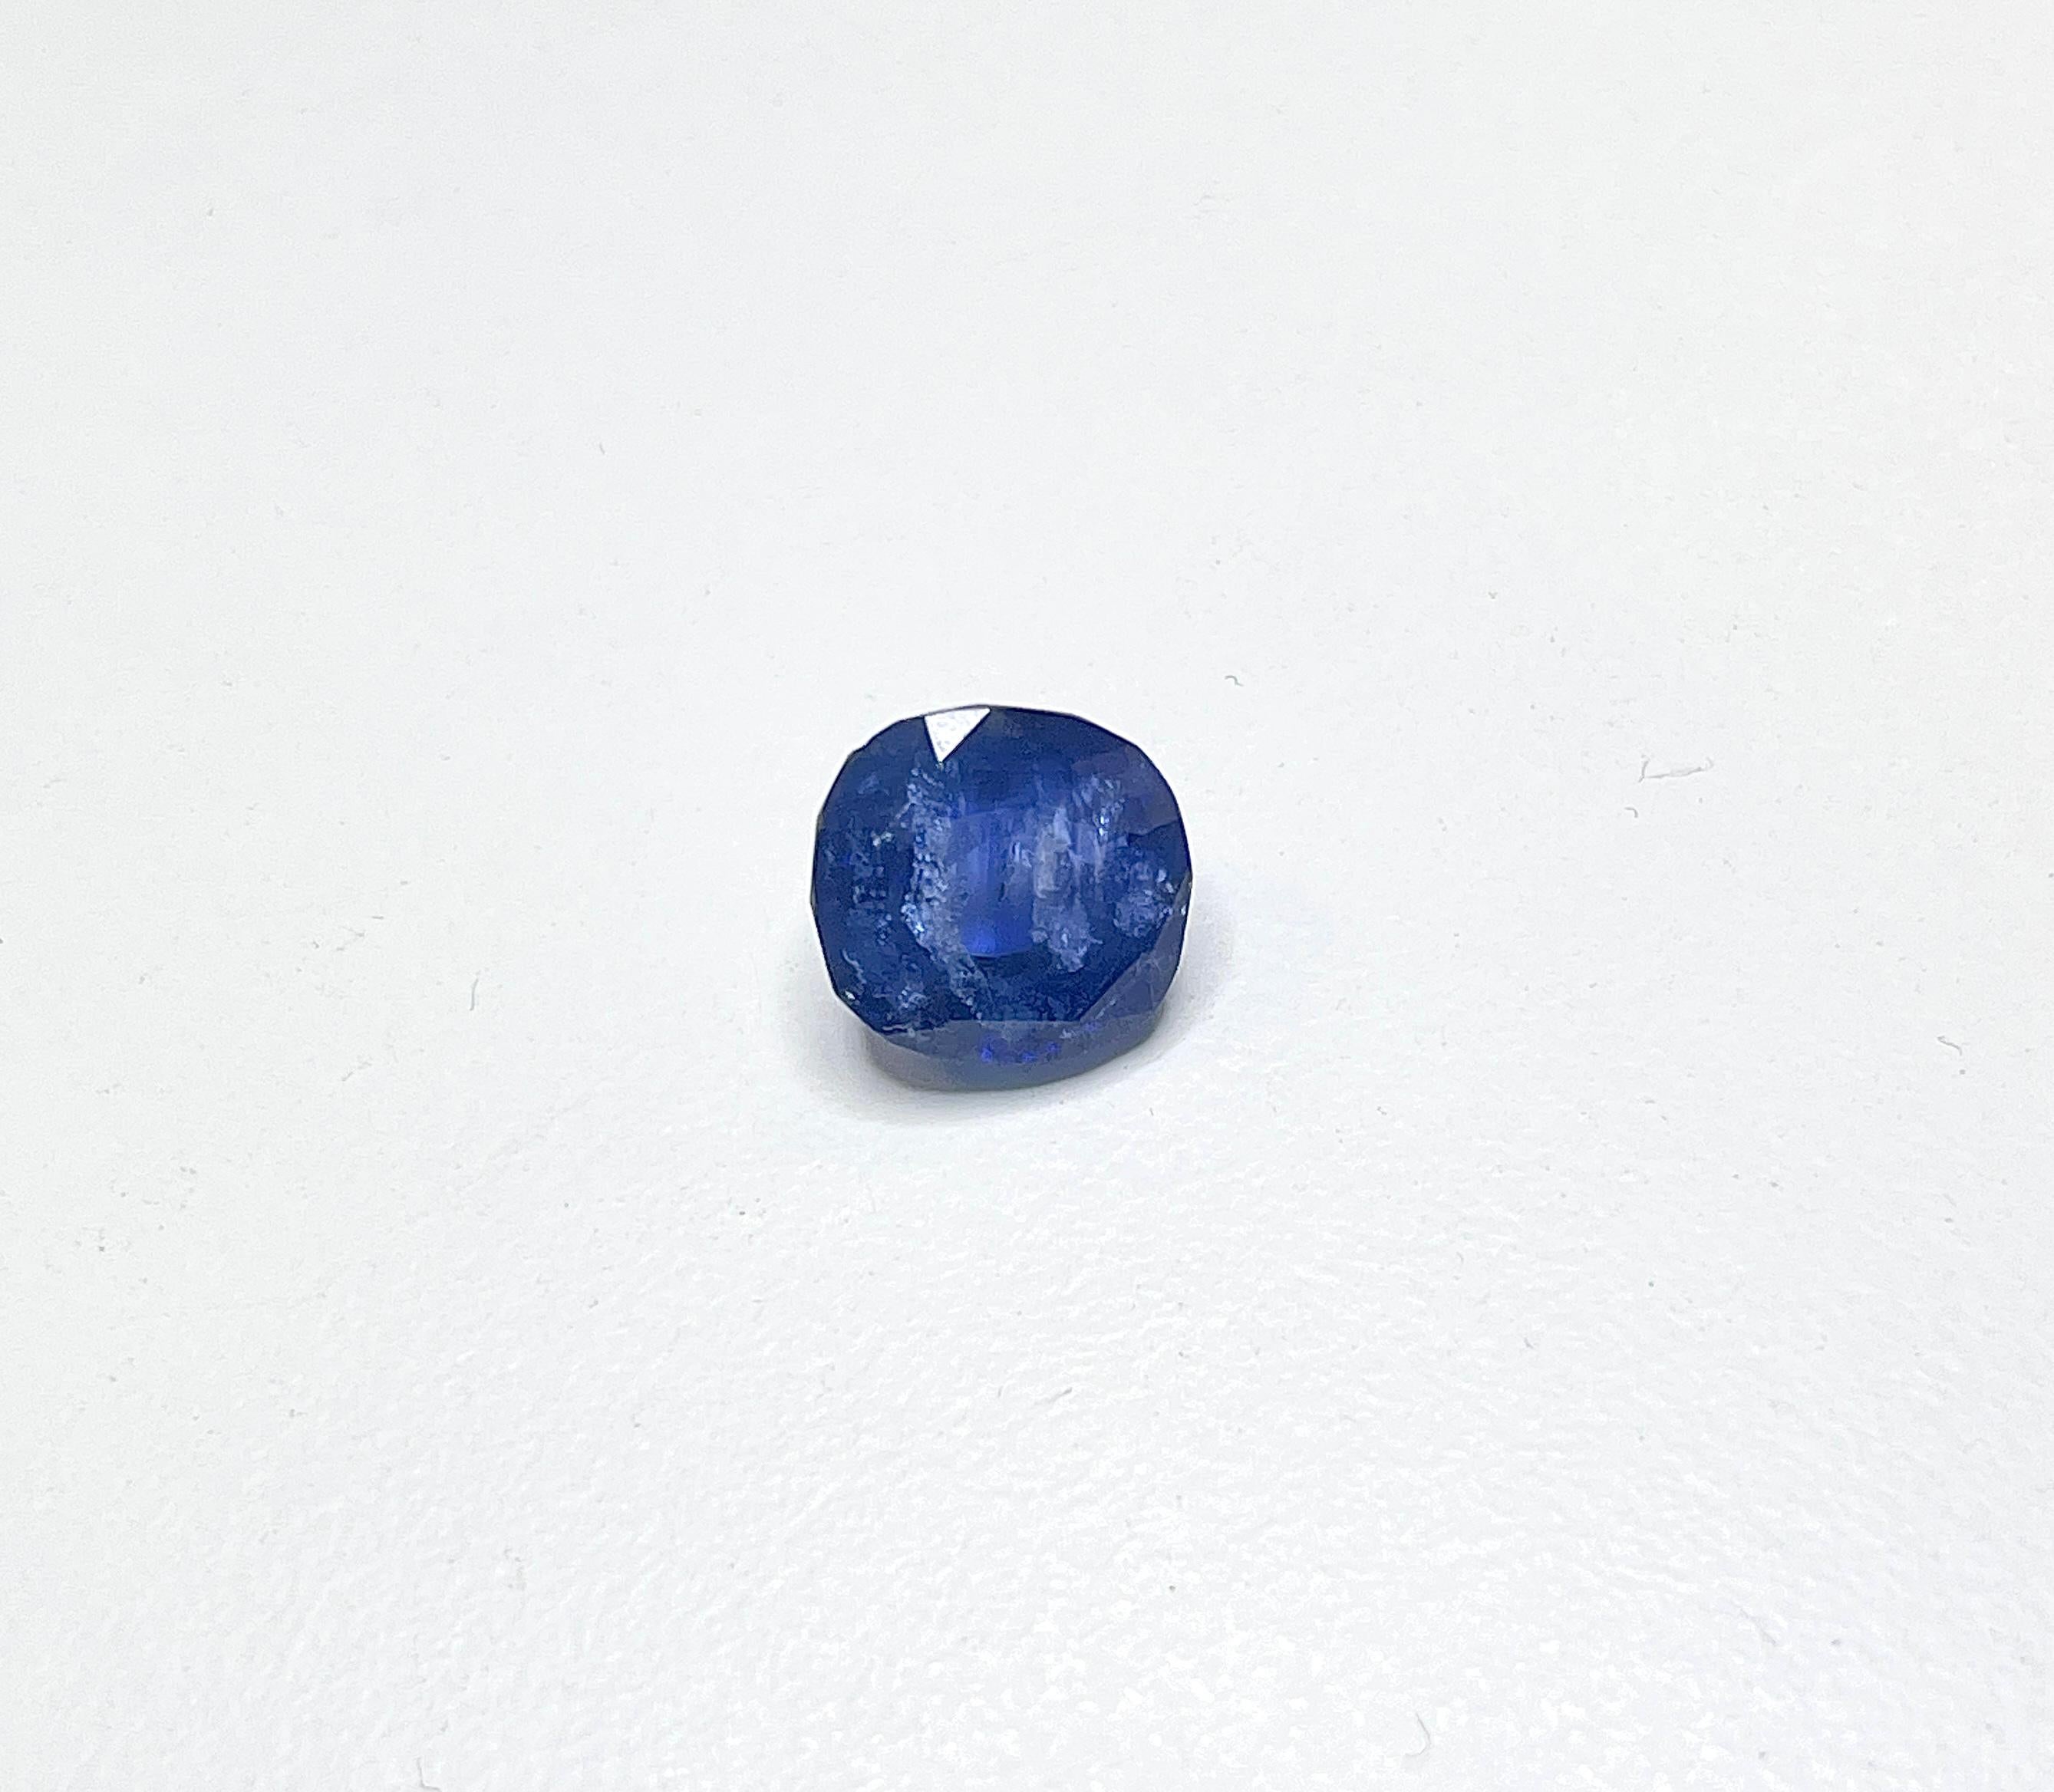 Taille radiant Pierre précieuse non sertie, saphir naturel bleu intense taille radiant de 7,58 carats